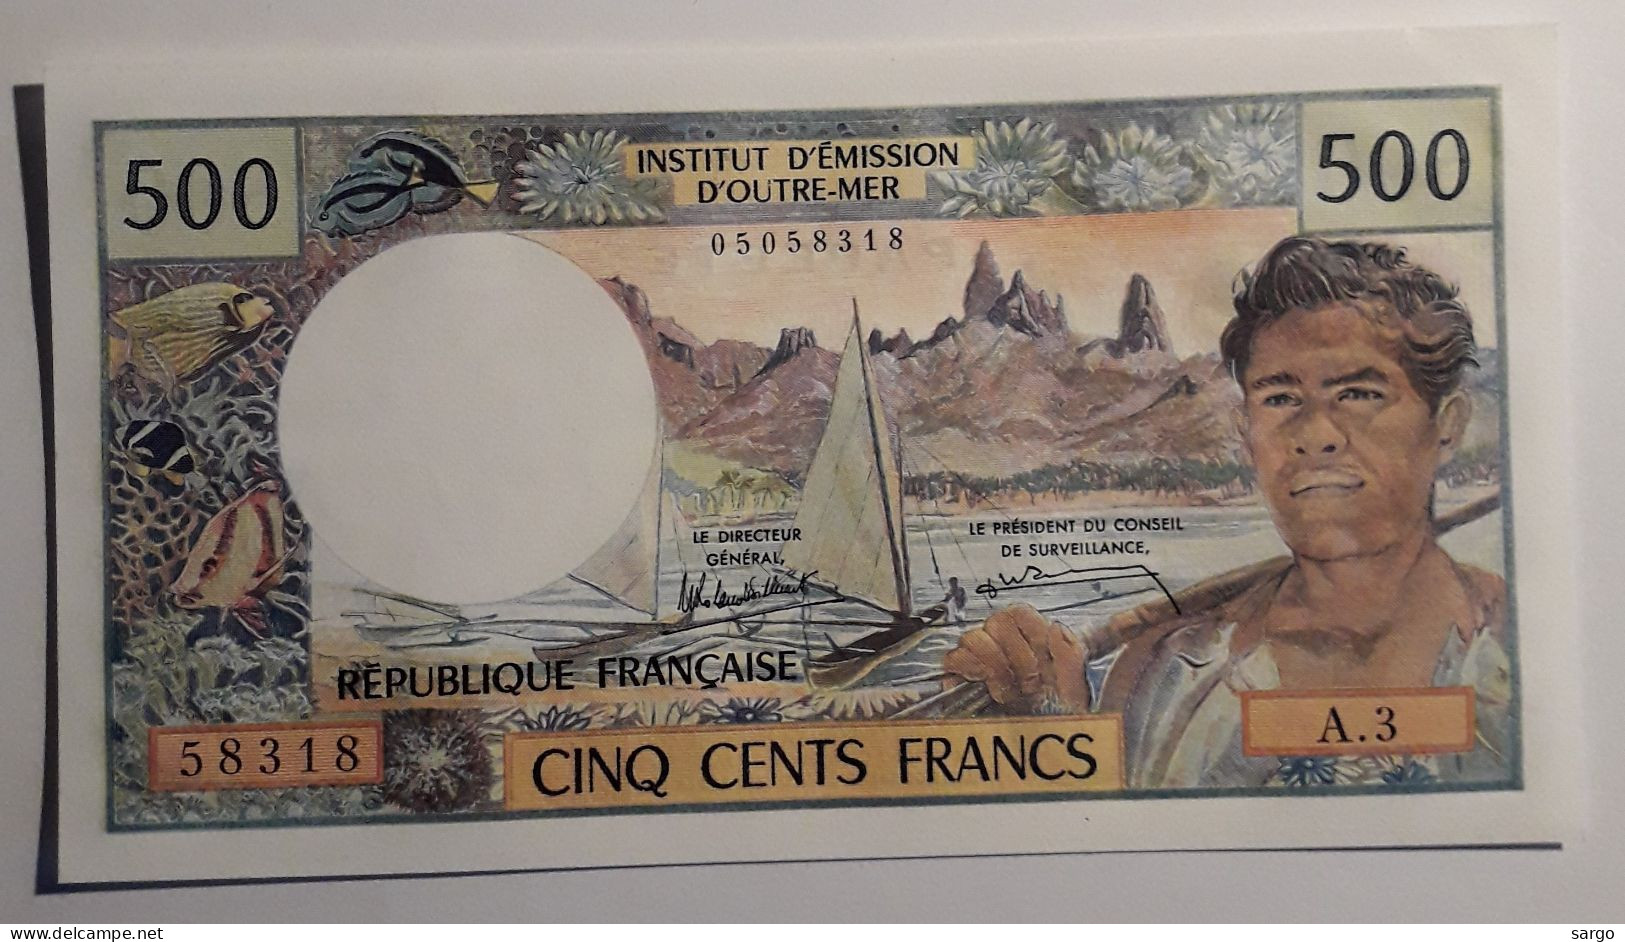 FRENCH POLYNESIA - PAPEETE - 500 FRANCS - 1985 - UNCIRC - P 25D - BANKNOTES - PAPER MONEY - CARTAMONETA - - Papeete (French Polynesia 1914-1985)